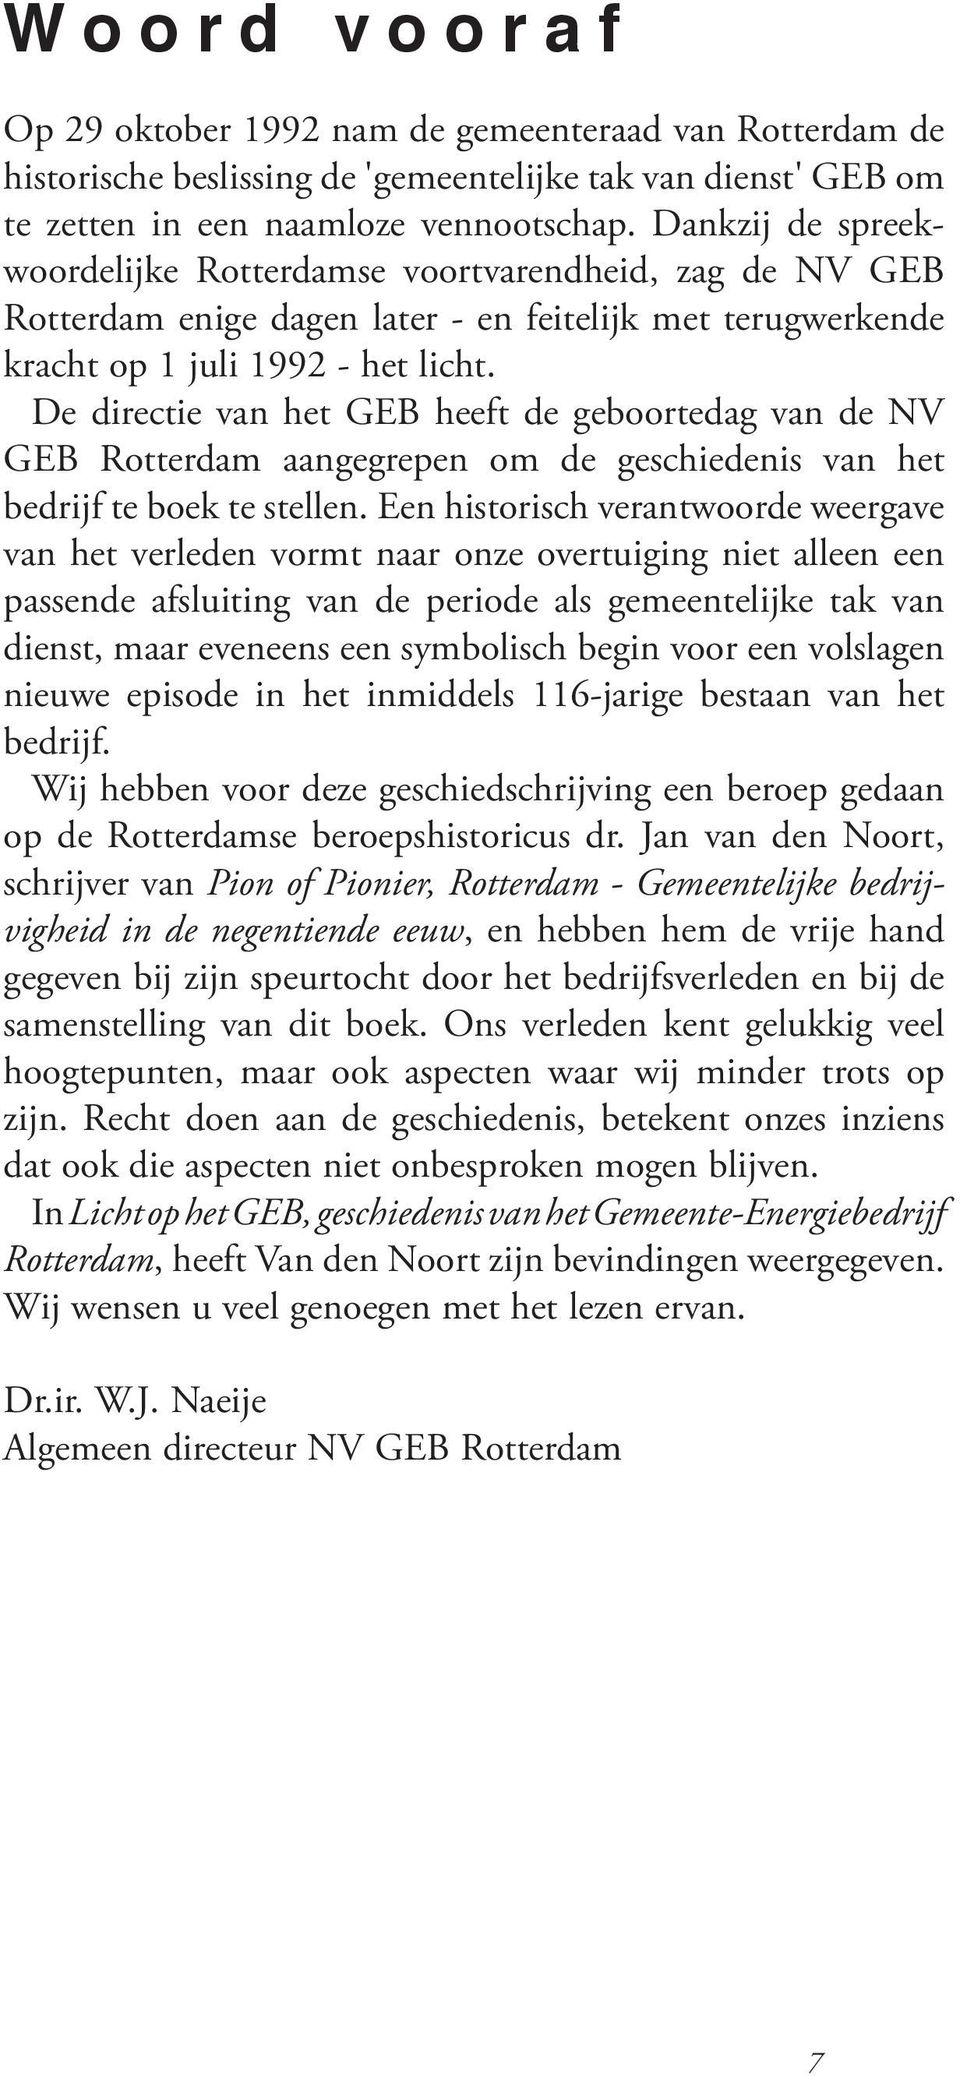 De directie van het GEB heeft de geboortedag van de NV GEB Rotterdam aangegrepen om de geschiedenis van het bedrijf te boek te stellen.